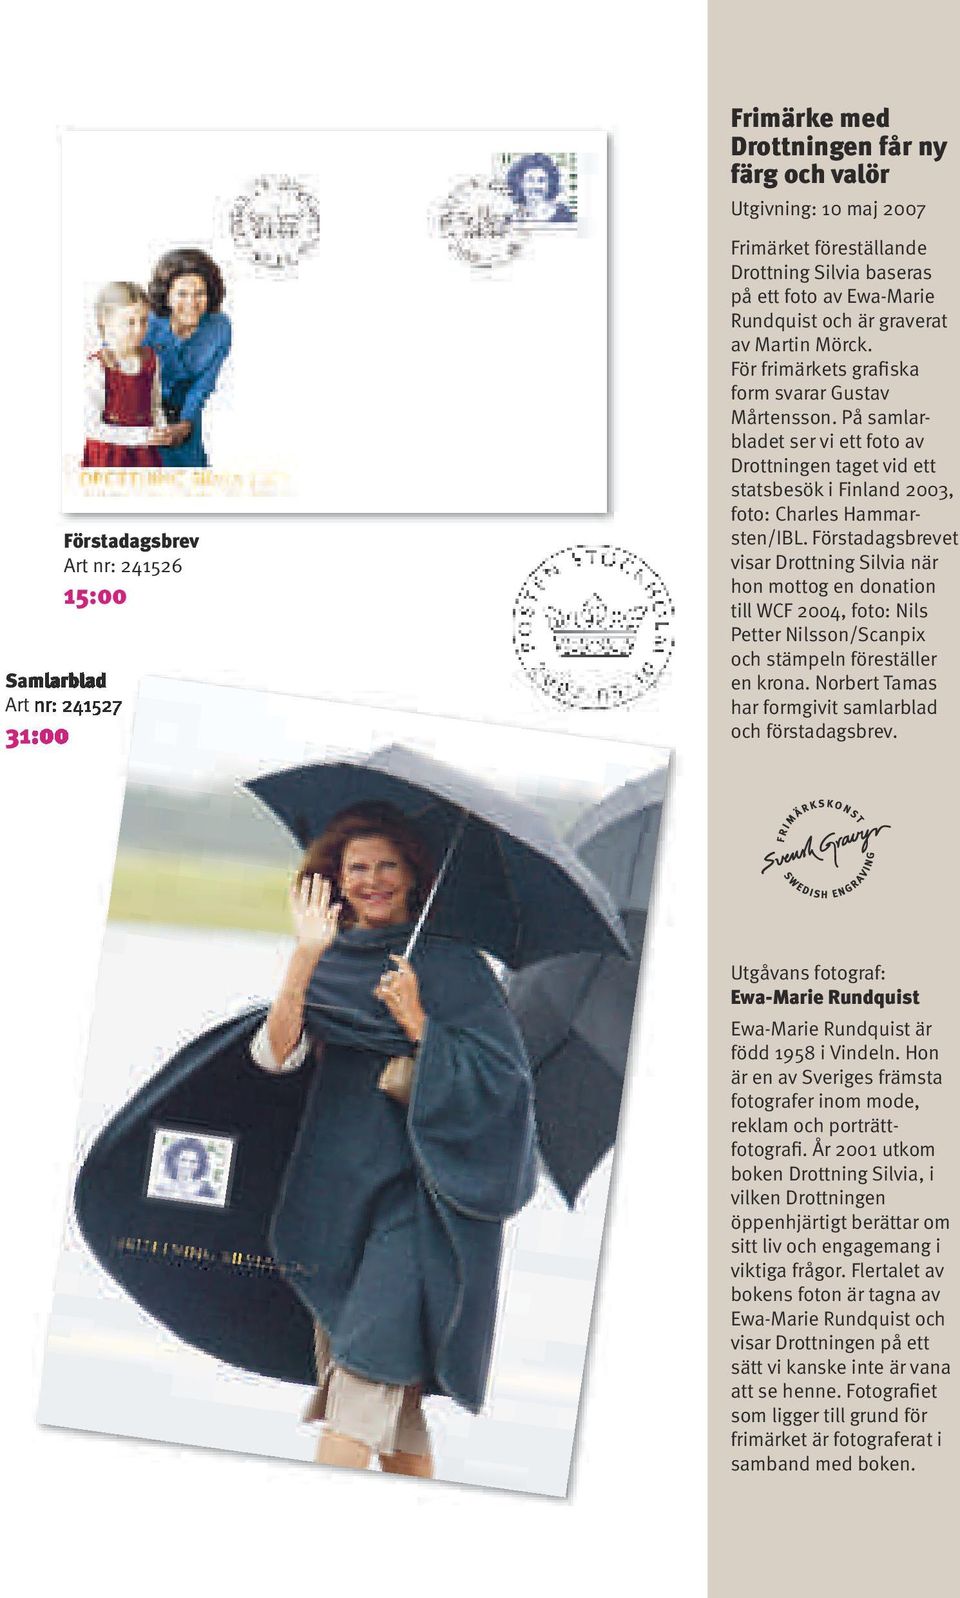 På samlarbladet ser vi ett foto av Drottningen taget vid ett statsbesök i Finland 2003, foto: Charles Hammarsten/IBL.